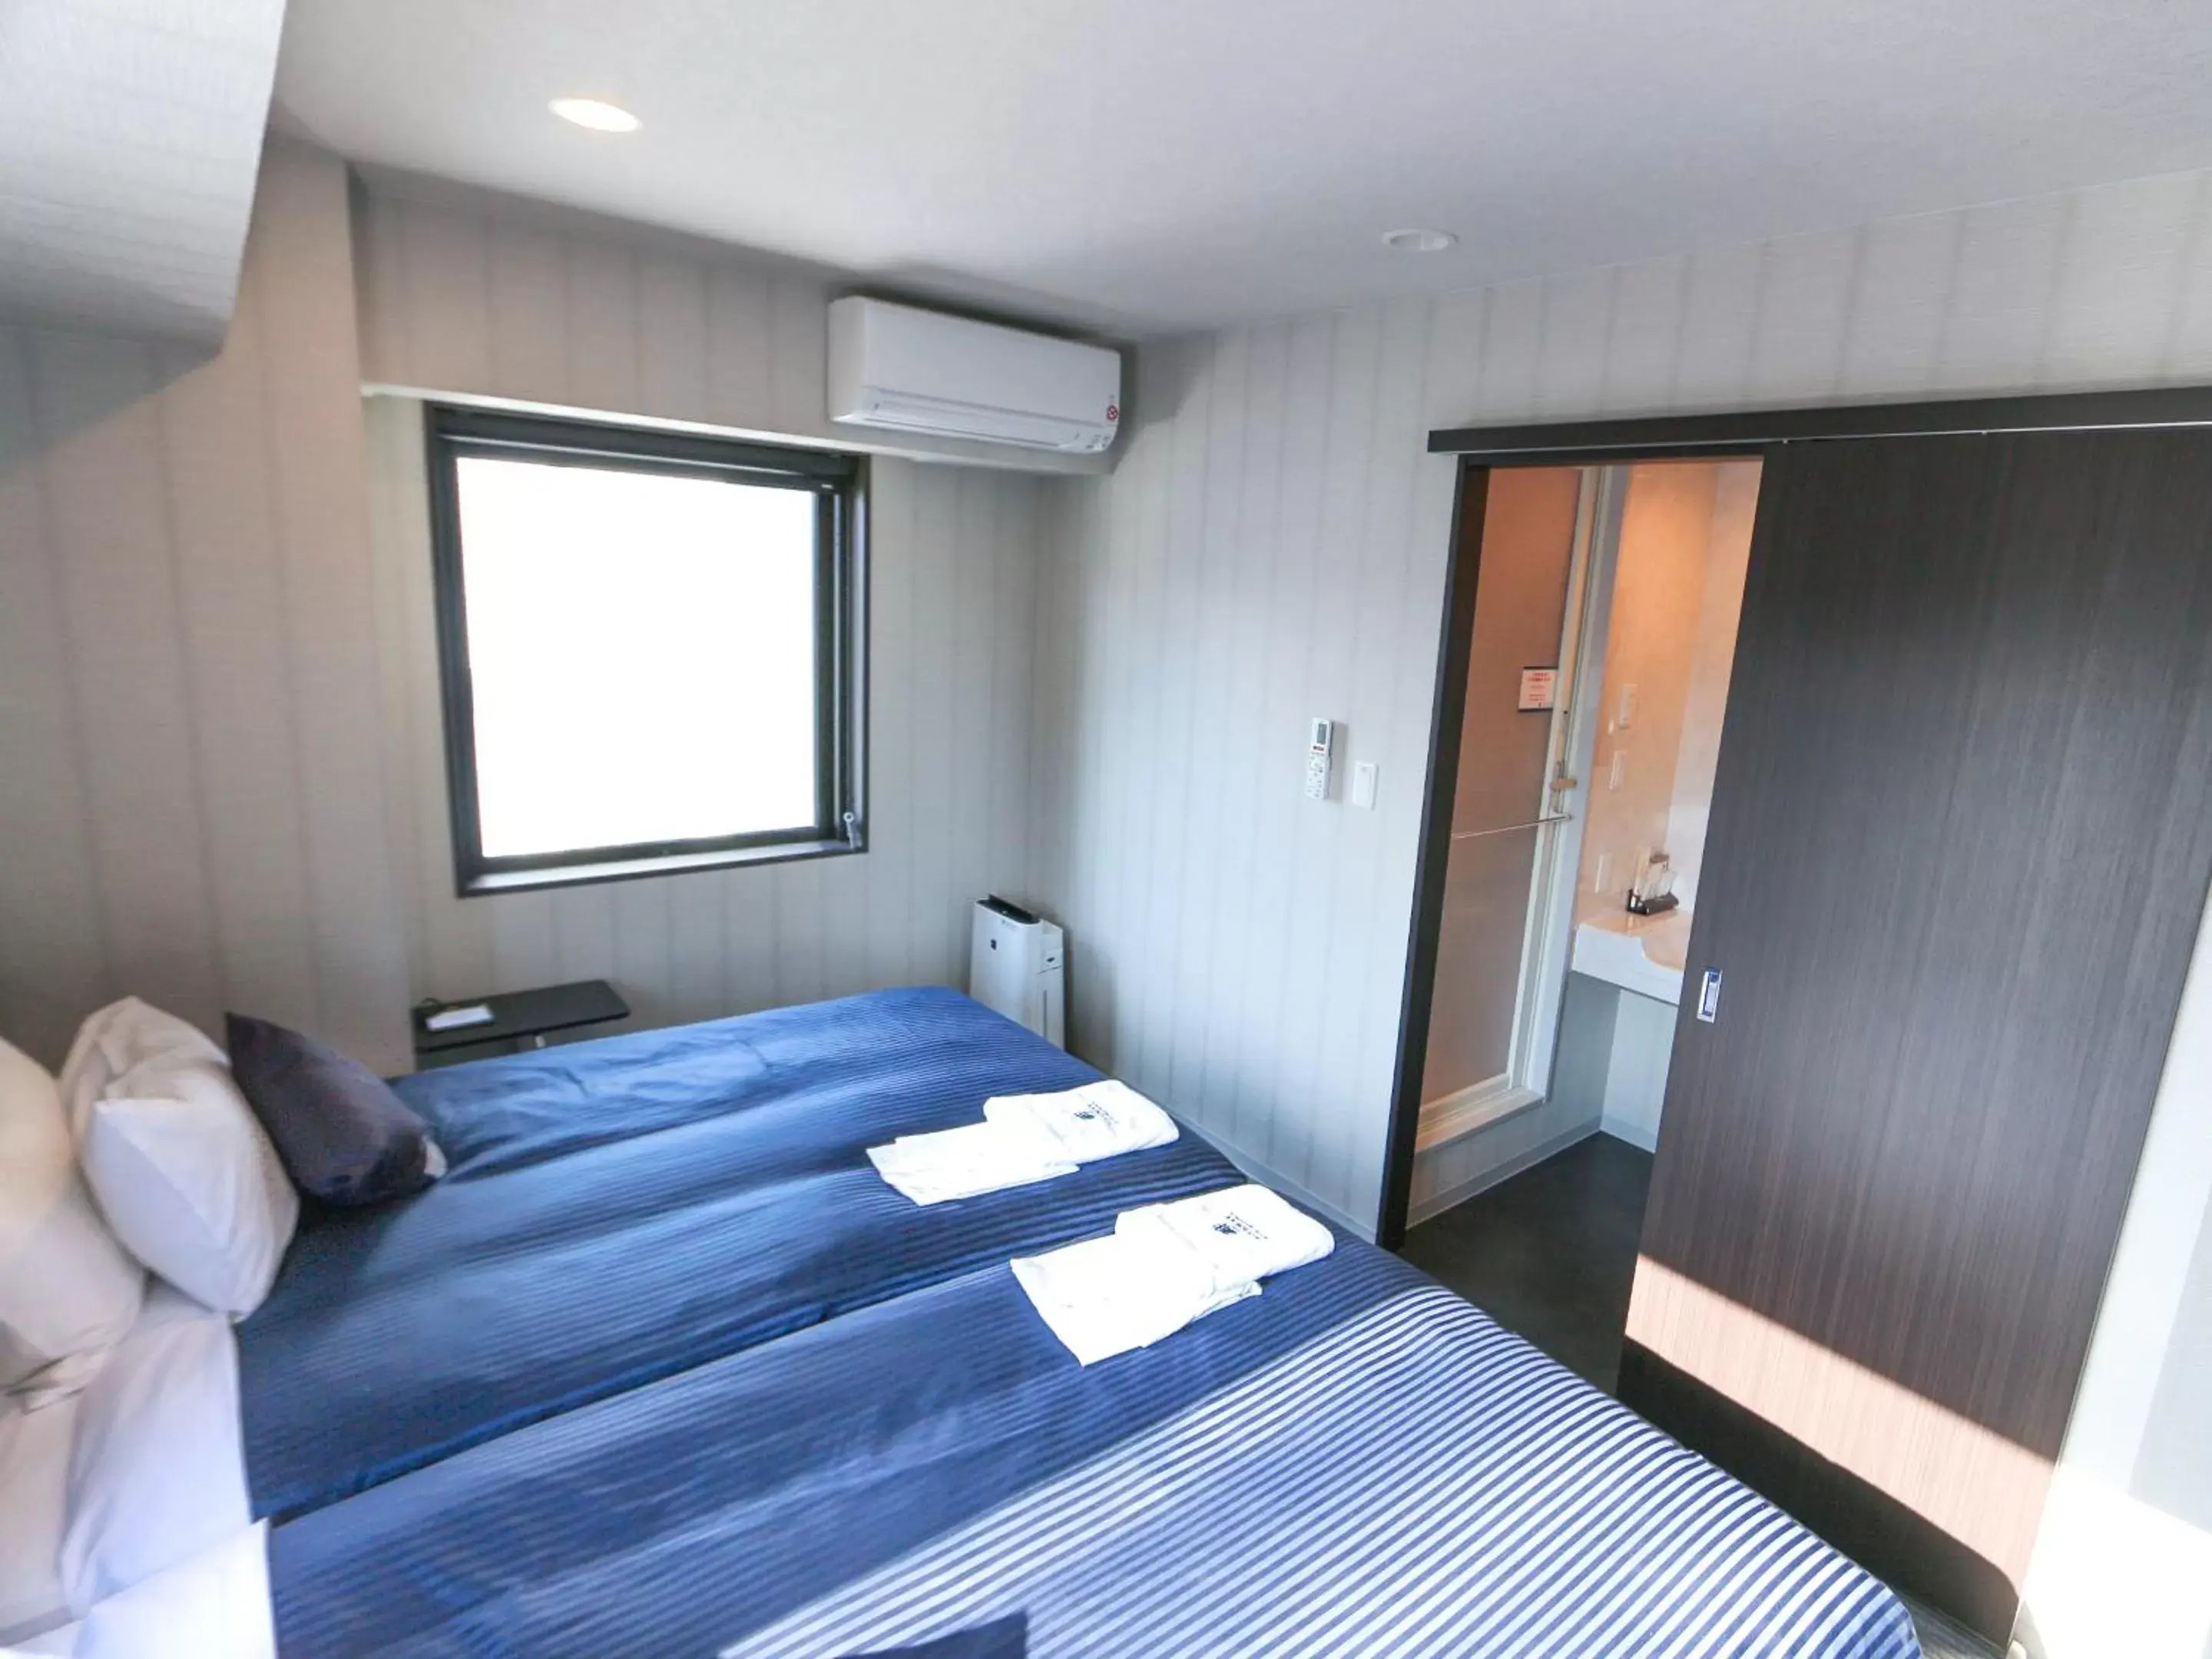 Bed in HOTEL LiVEMAX Sapporo Susukino